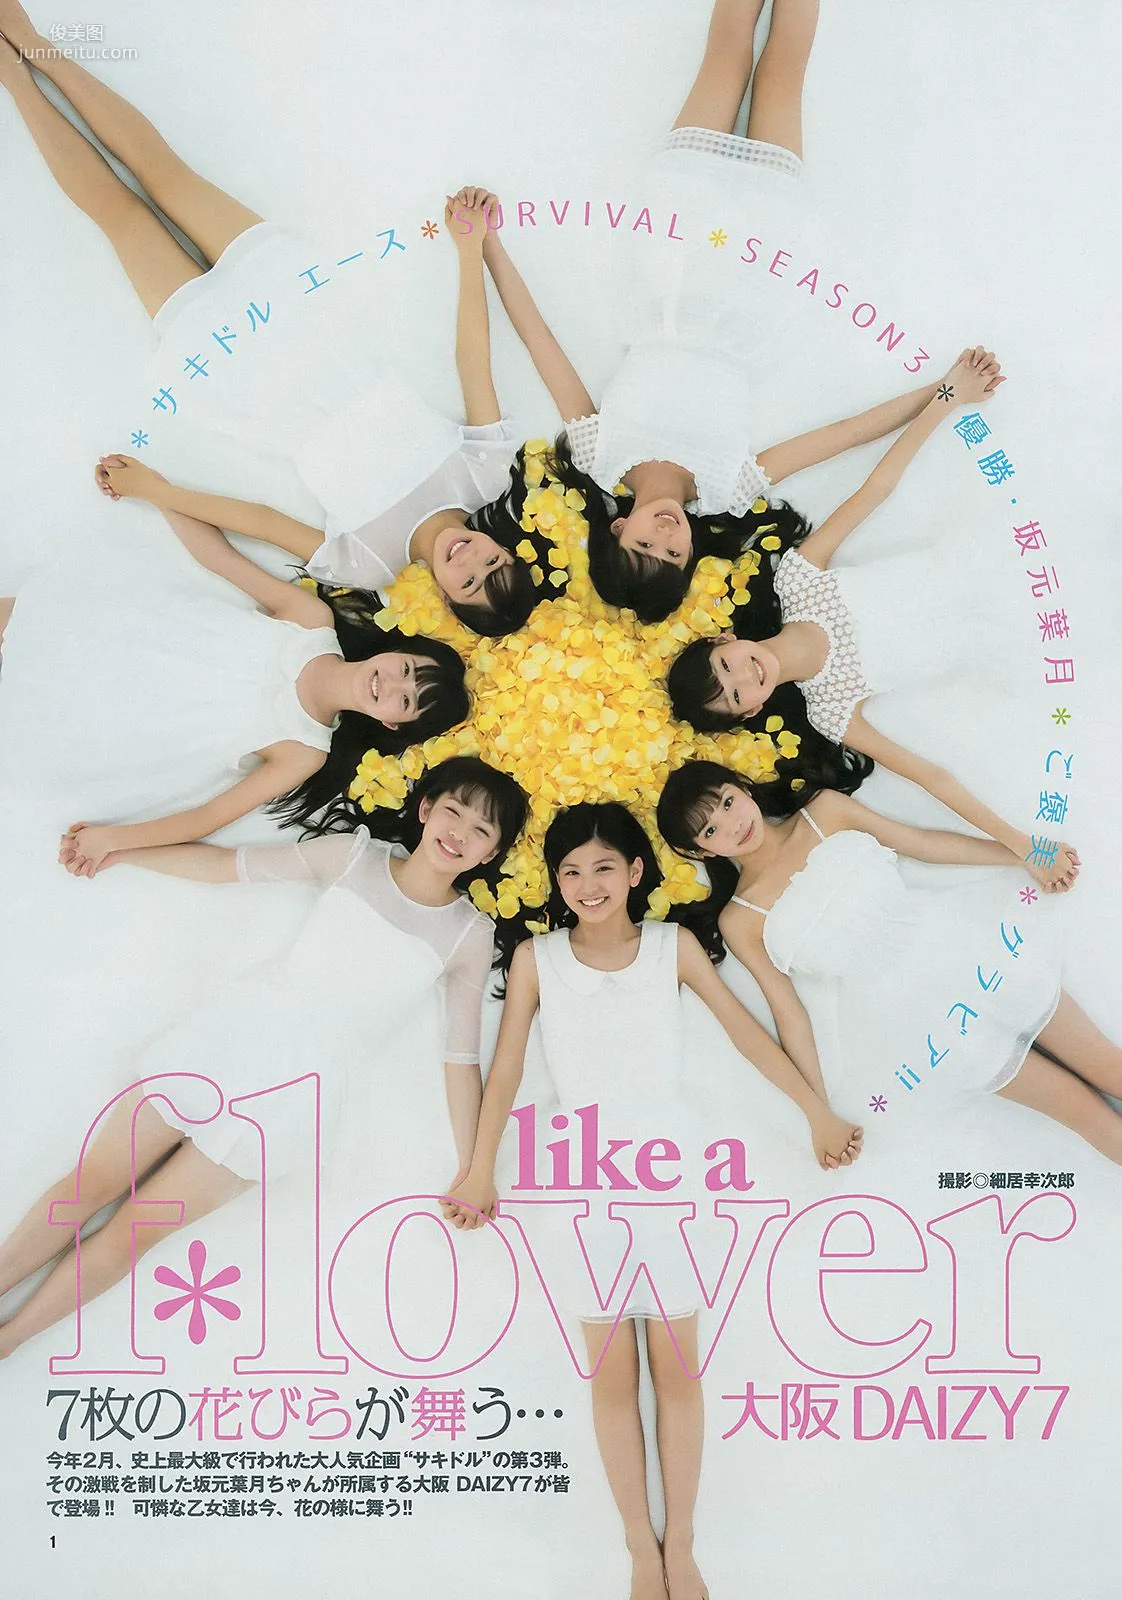 ギャルコン2014 制コレ アルティメット2014 大阪DAIZY7 [Weekly Young Jump] 2014年No.42 写真杂志14